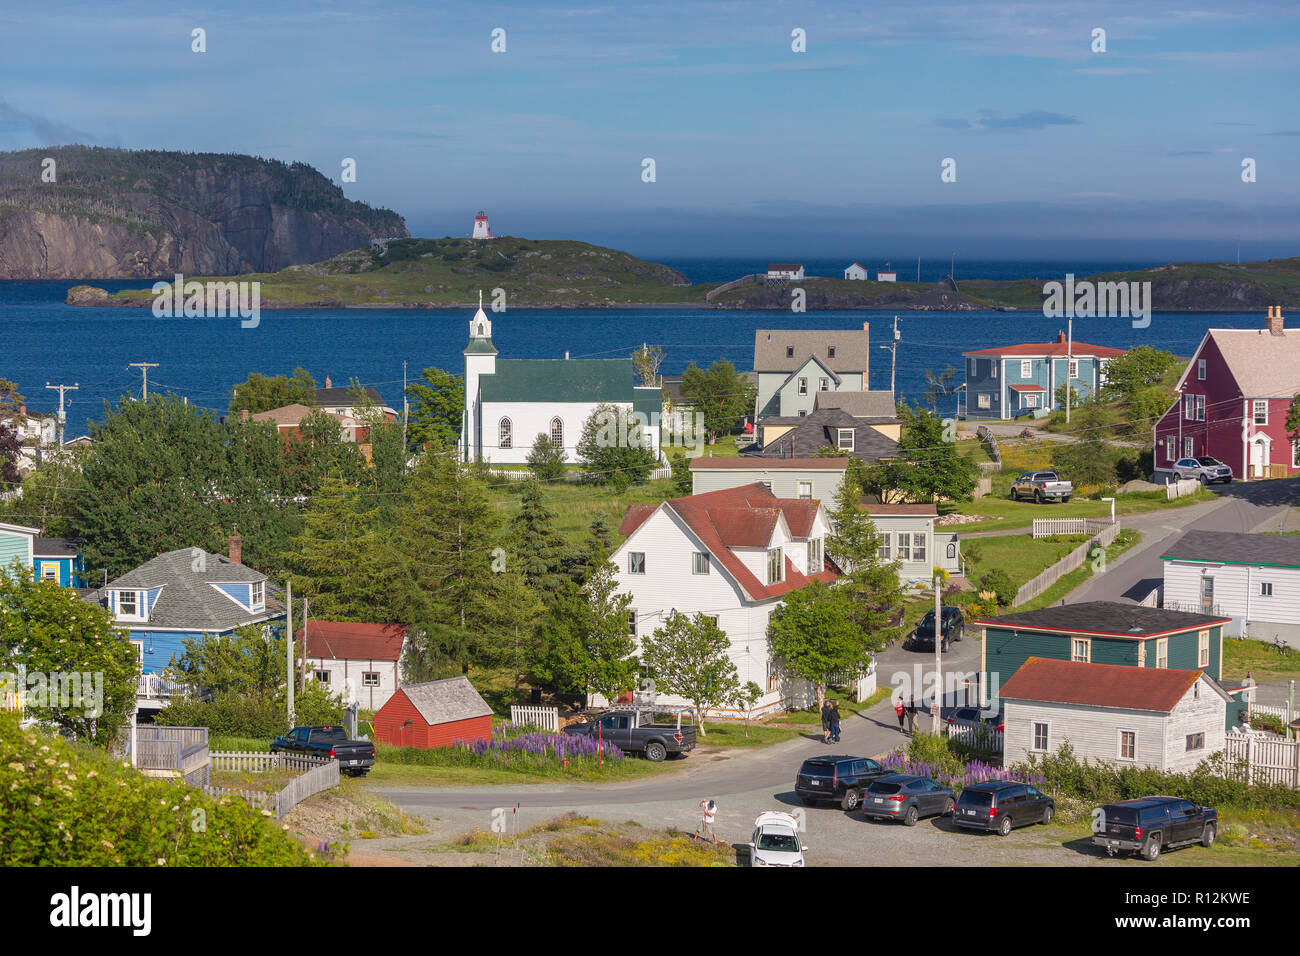 Dreifaltigkeit, Neufundland, Kanada - kleine Küstenstadt Dreifaltigkeit. Stockfoto